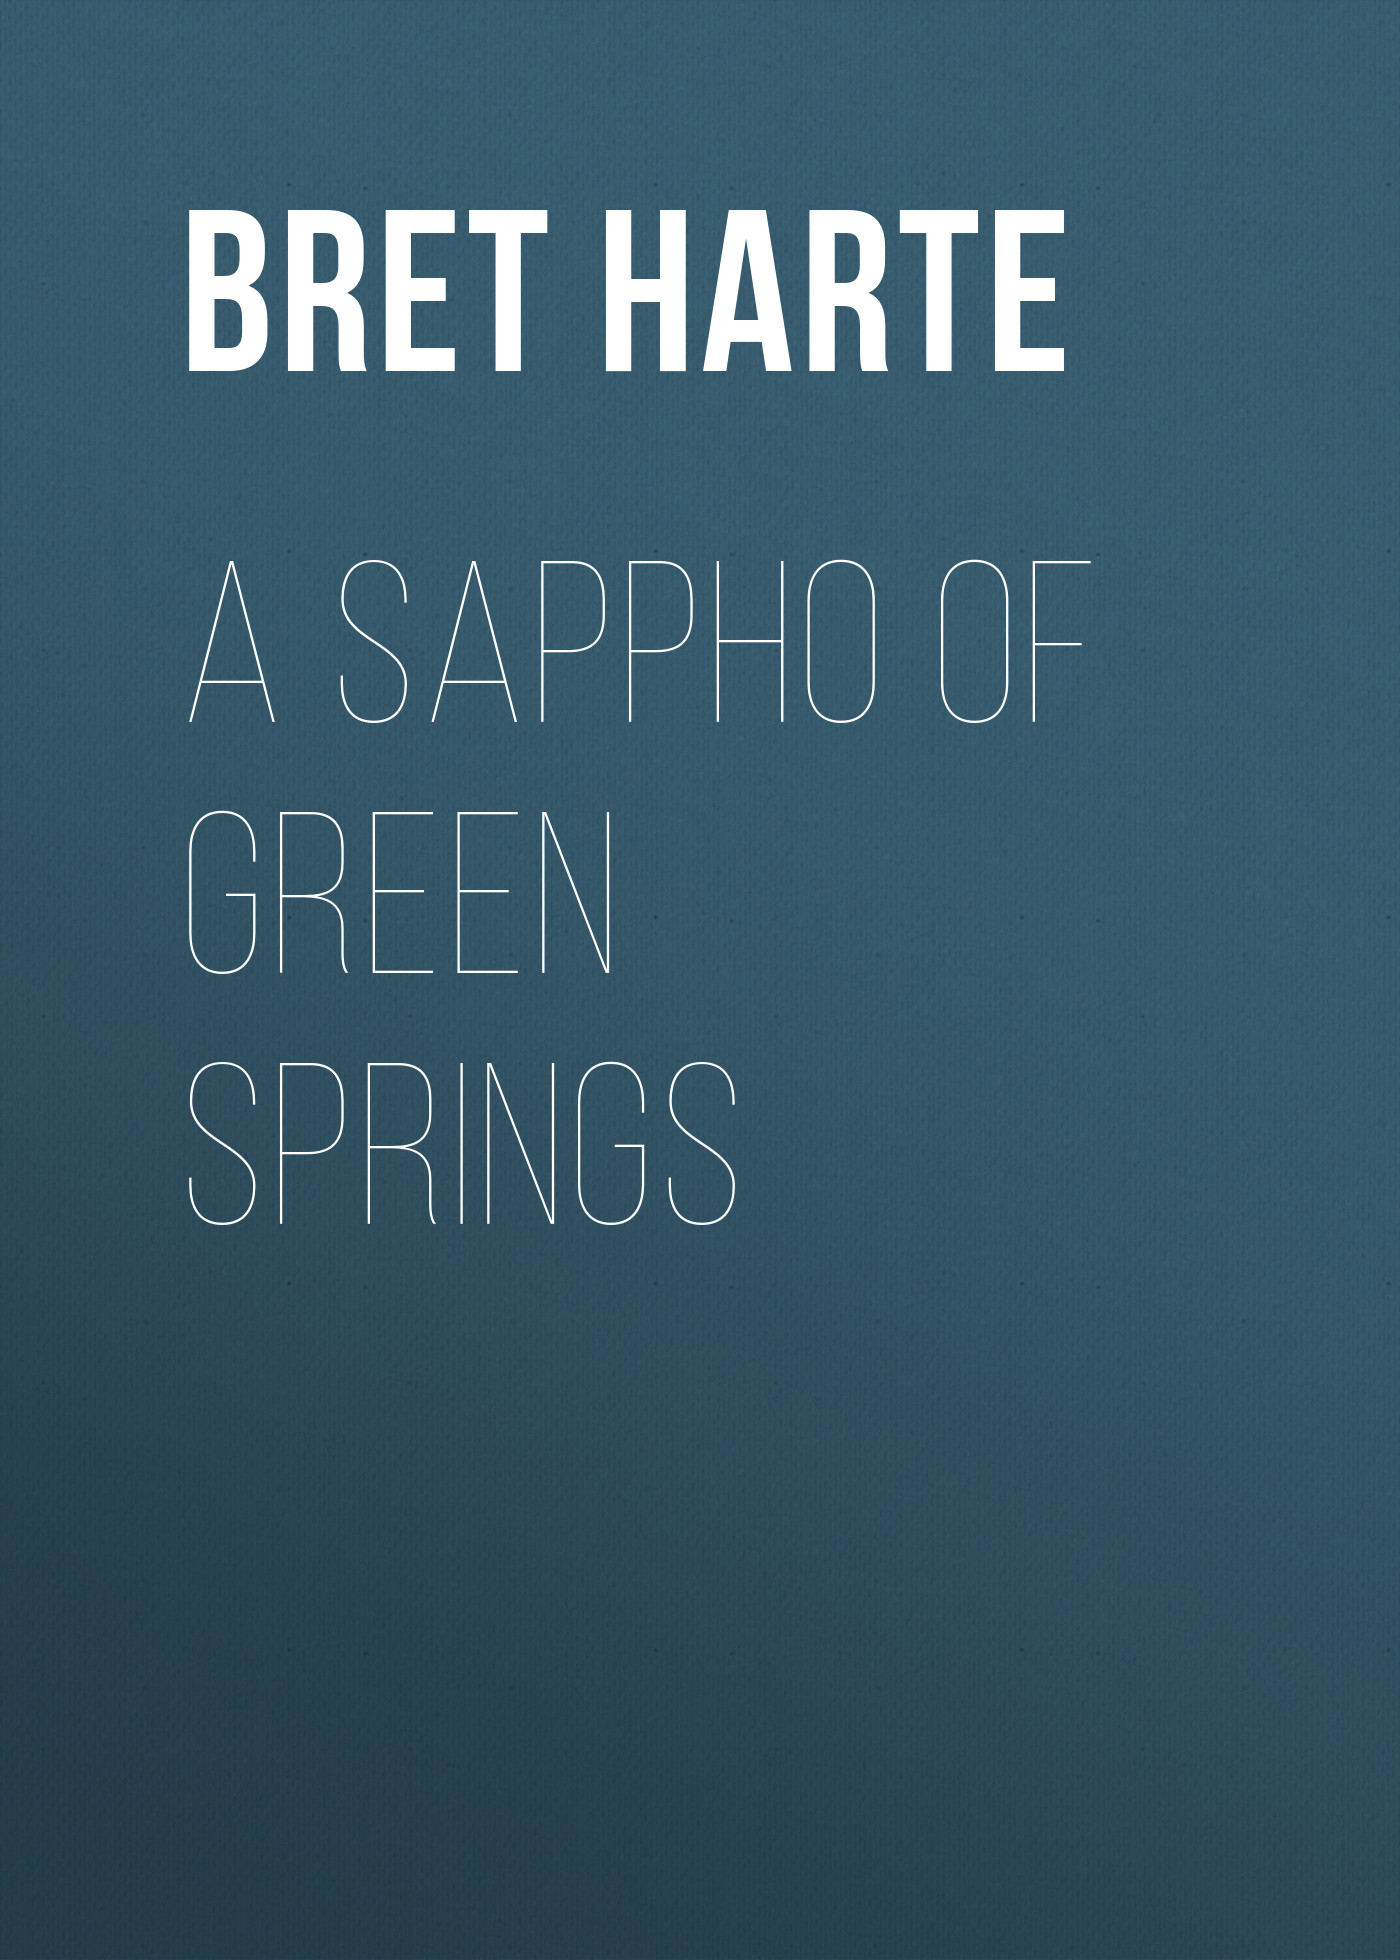 Книга A Sappho of Green Springs из серии , созданная Bret Harte, может относится к жанру Зарубежная фантастика, Литература 19 века, Зарубежная старинная литература, Зарубежная классика. Стоимость электронной книги A Sappho of Green Springs с идентификатором 36322148 составляет 0 руб.